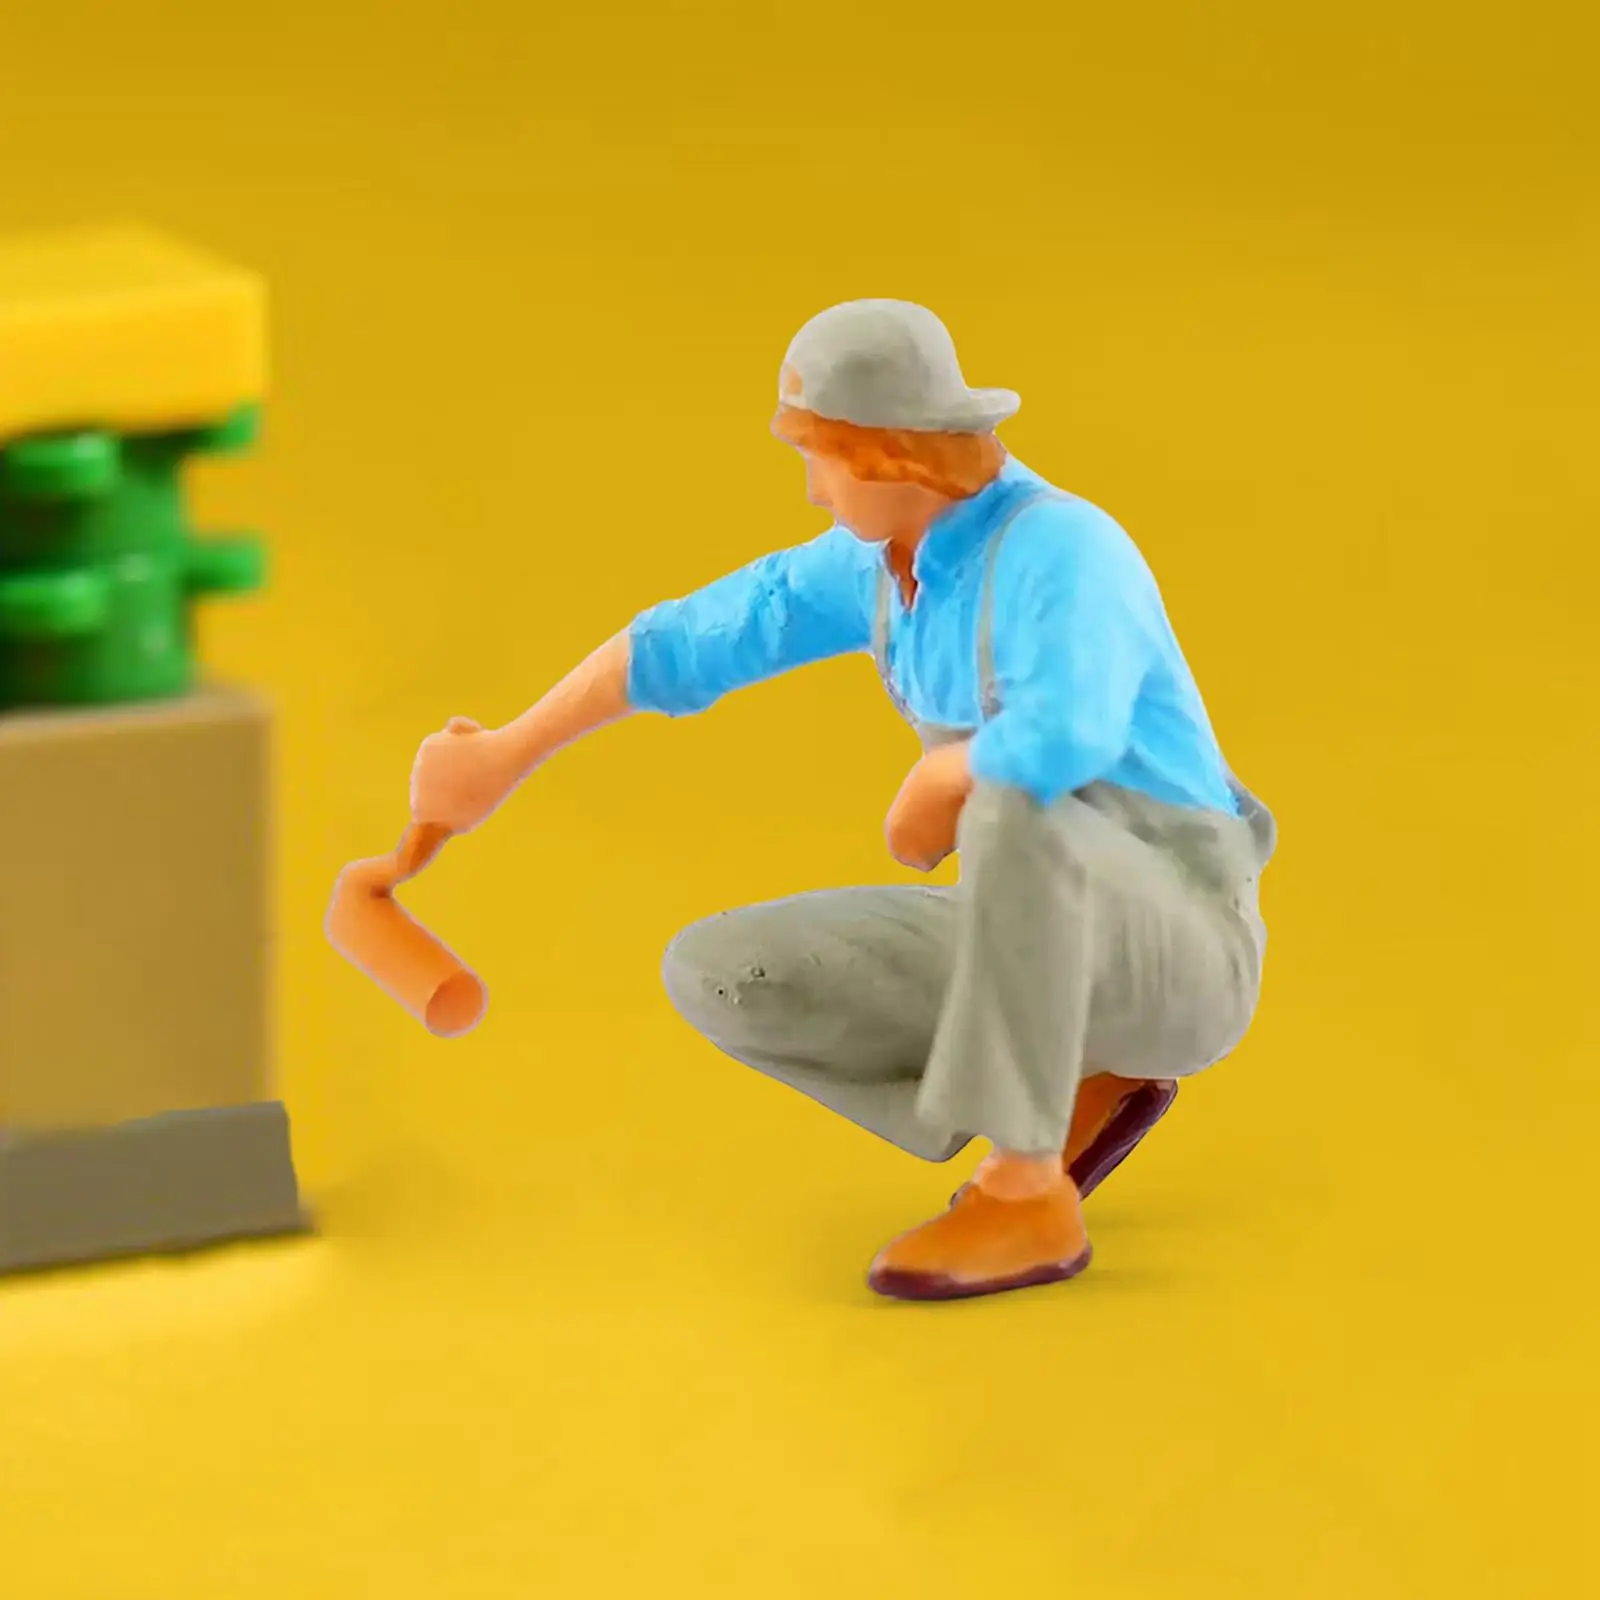 Hand Painted 1:87 Miniature People Figurines Desktop Decor Painter Figurines Toys for Miniature Scenes 